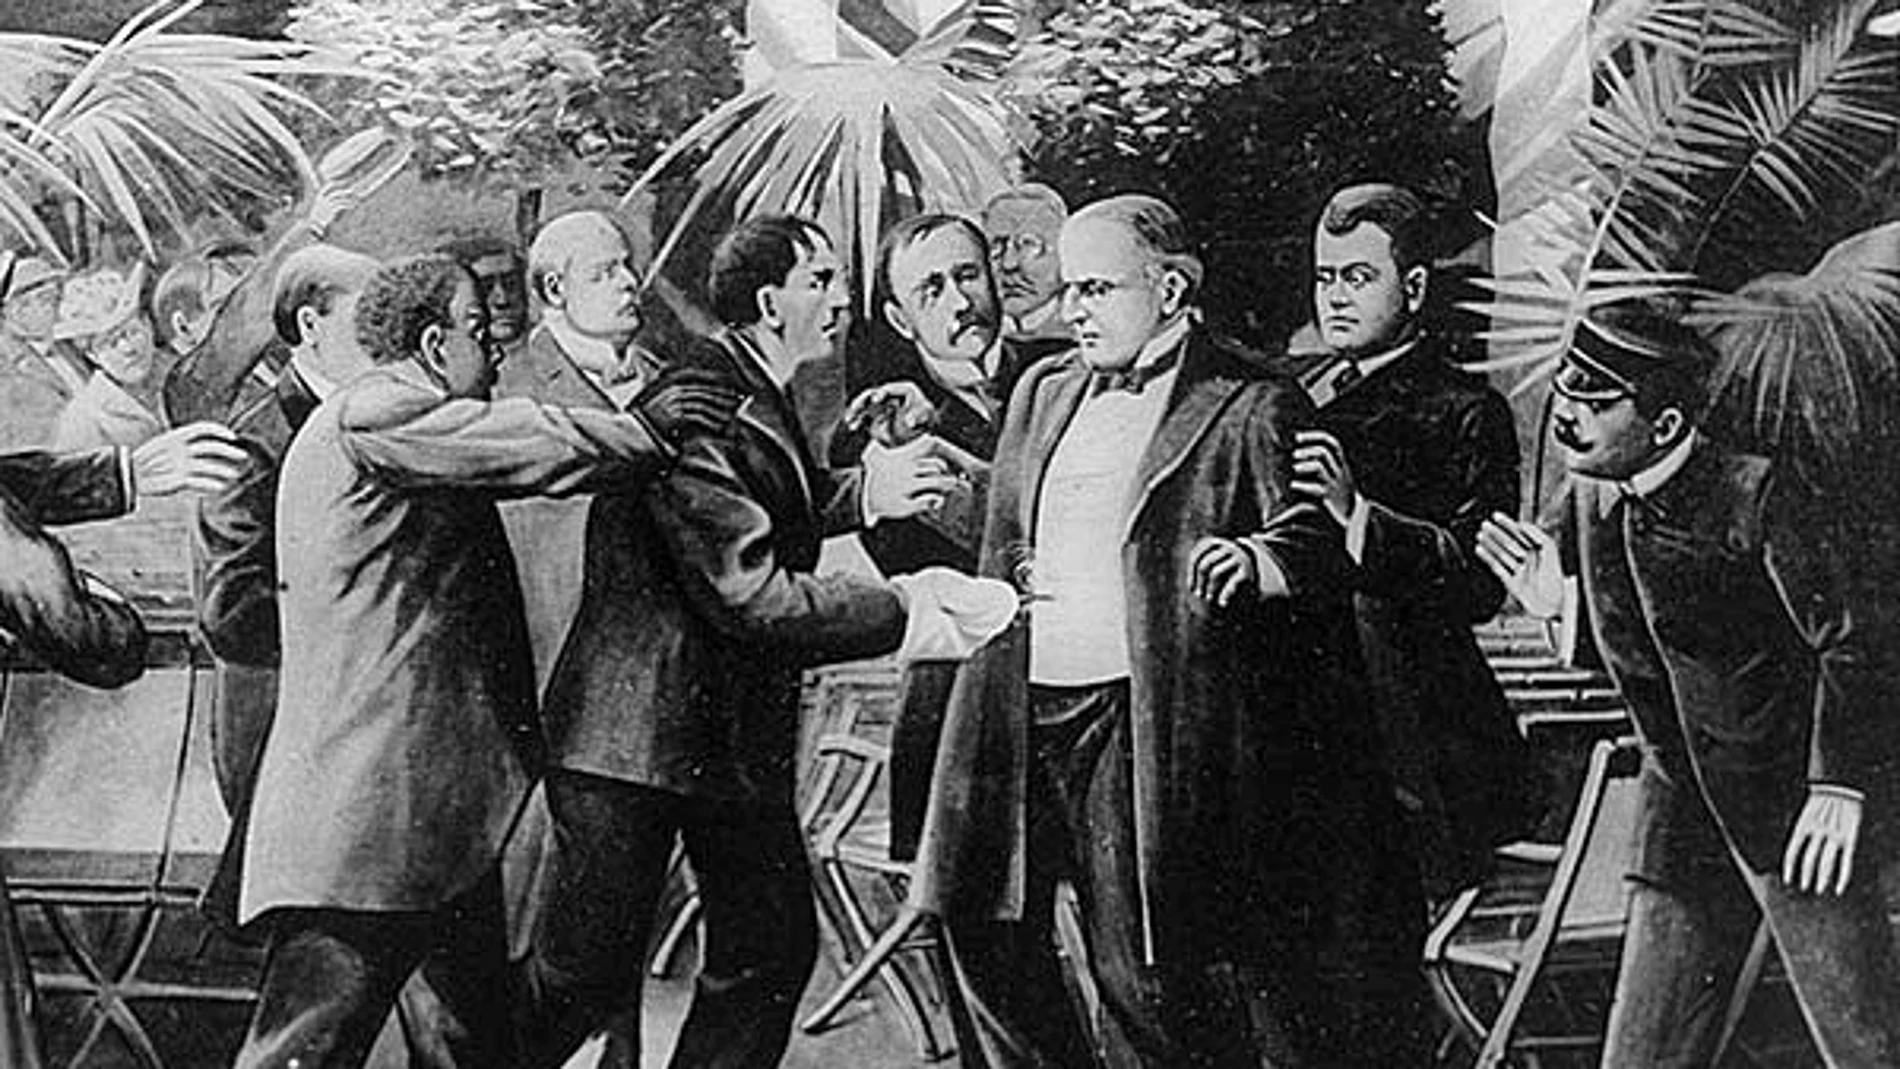 Momento en el que Leon Czolgosz atacó a William McKinley el 6 de septiembre de 1901